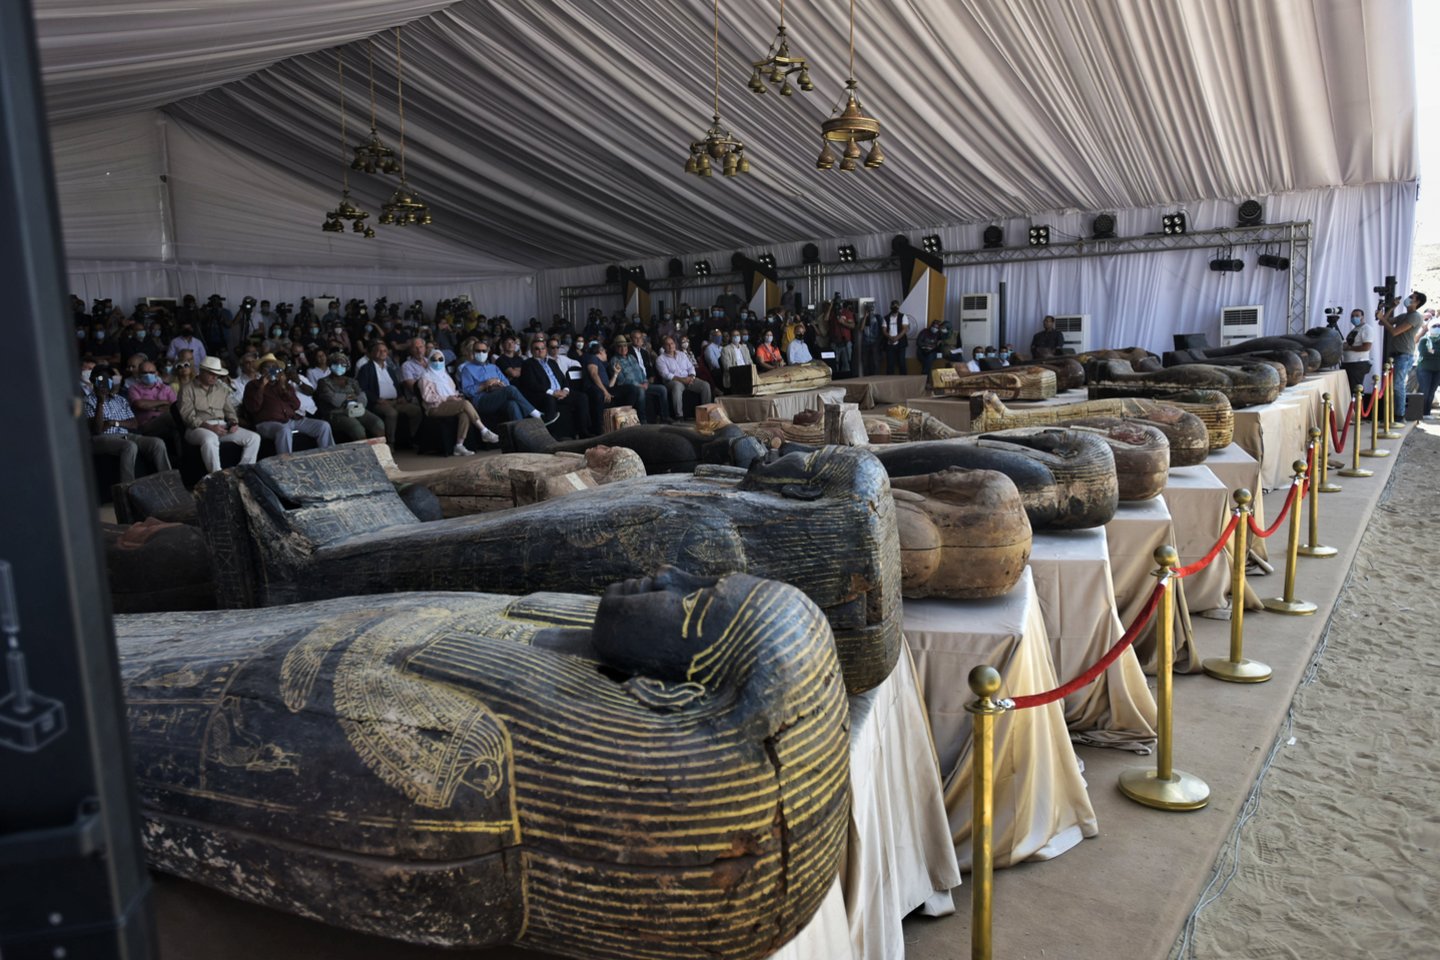  Egipto archeologai šeštadienį pristatė per pastarąsias savaites rastus 59 gerai išsilaikiusius ir sandariai uždarytus medinius karstus, kuriems daugiau nei 2500 metų.<br>Imago / Zuma press / Sipa Press / Scanpix nuotr.